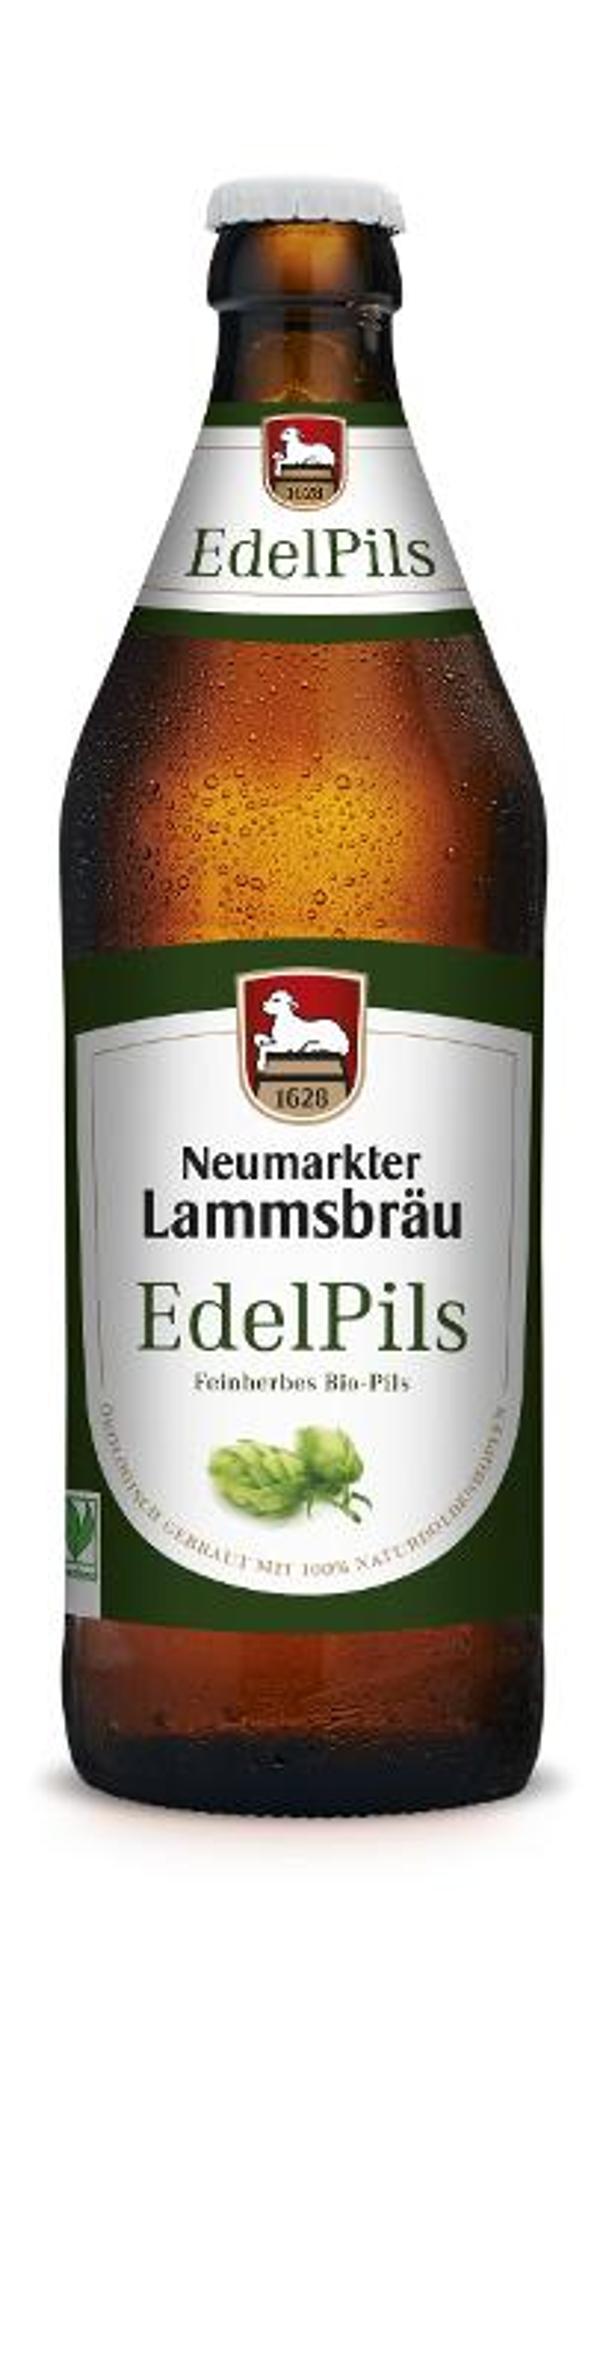 Produktfoto zu Lammsbräu - EdelPils